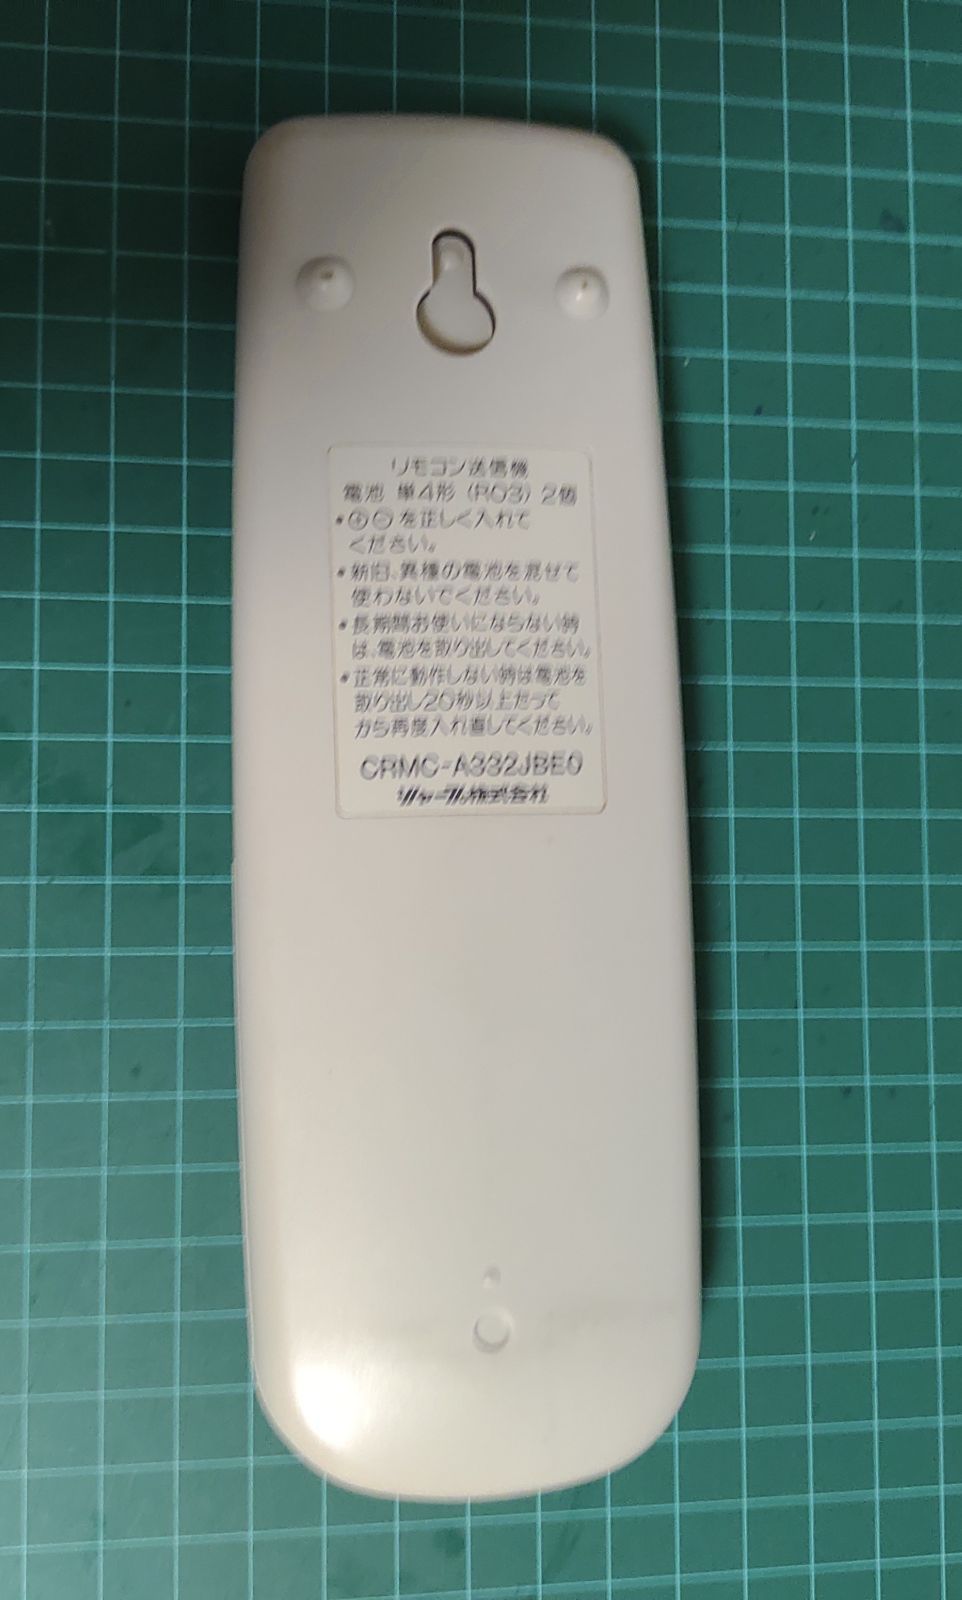 SHARP シャープ エアコン用リモコン CRMC-A332JBE0 - なんでもショップ